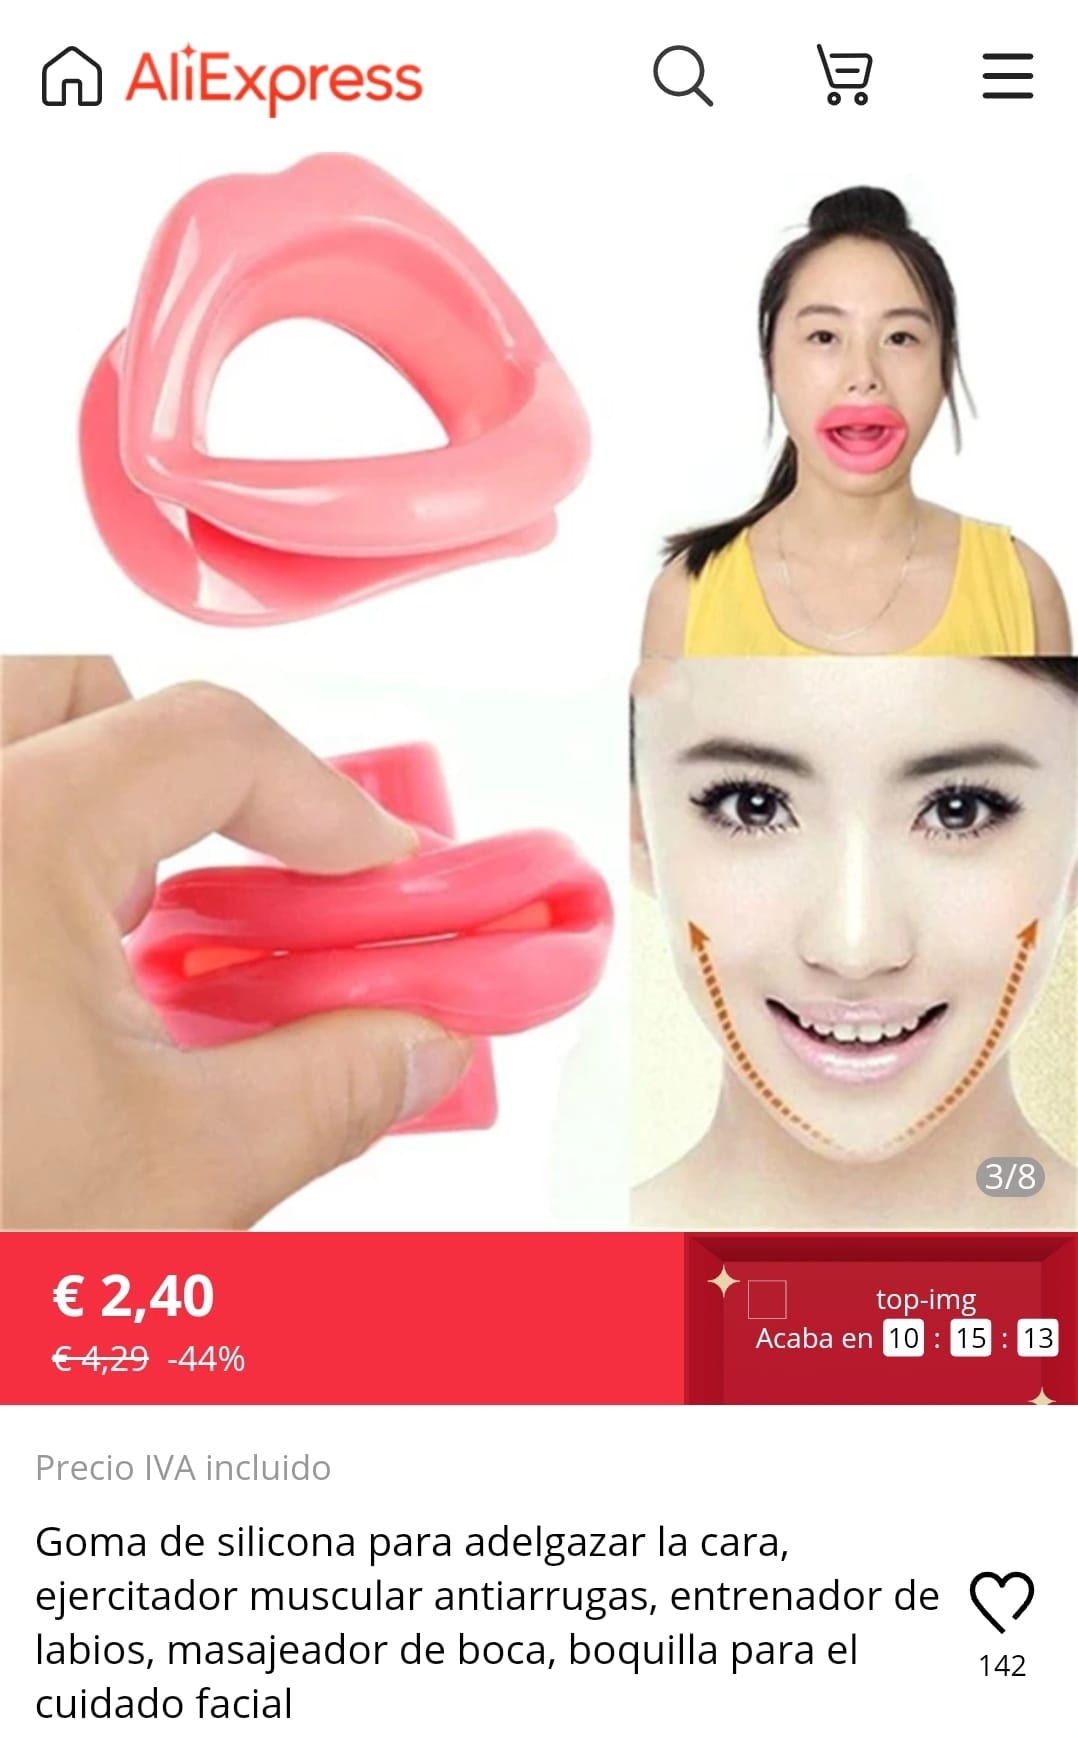 "Dispositivo anti arrugas para adelgazar la cara"